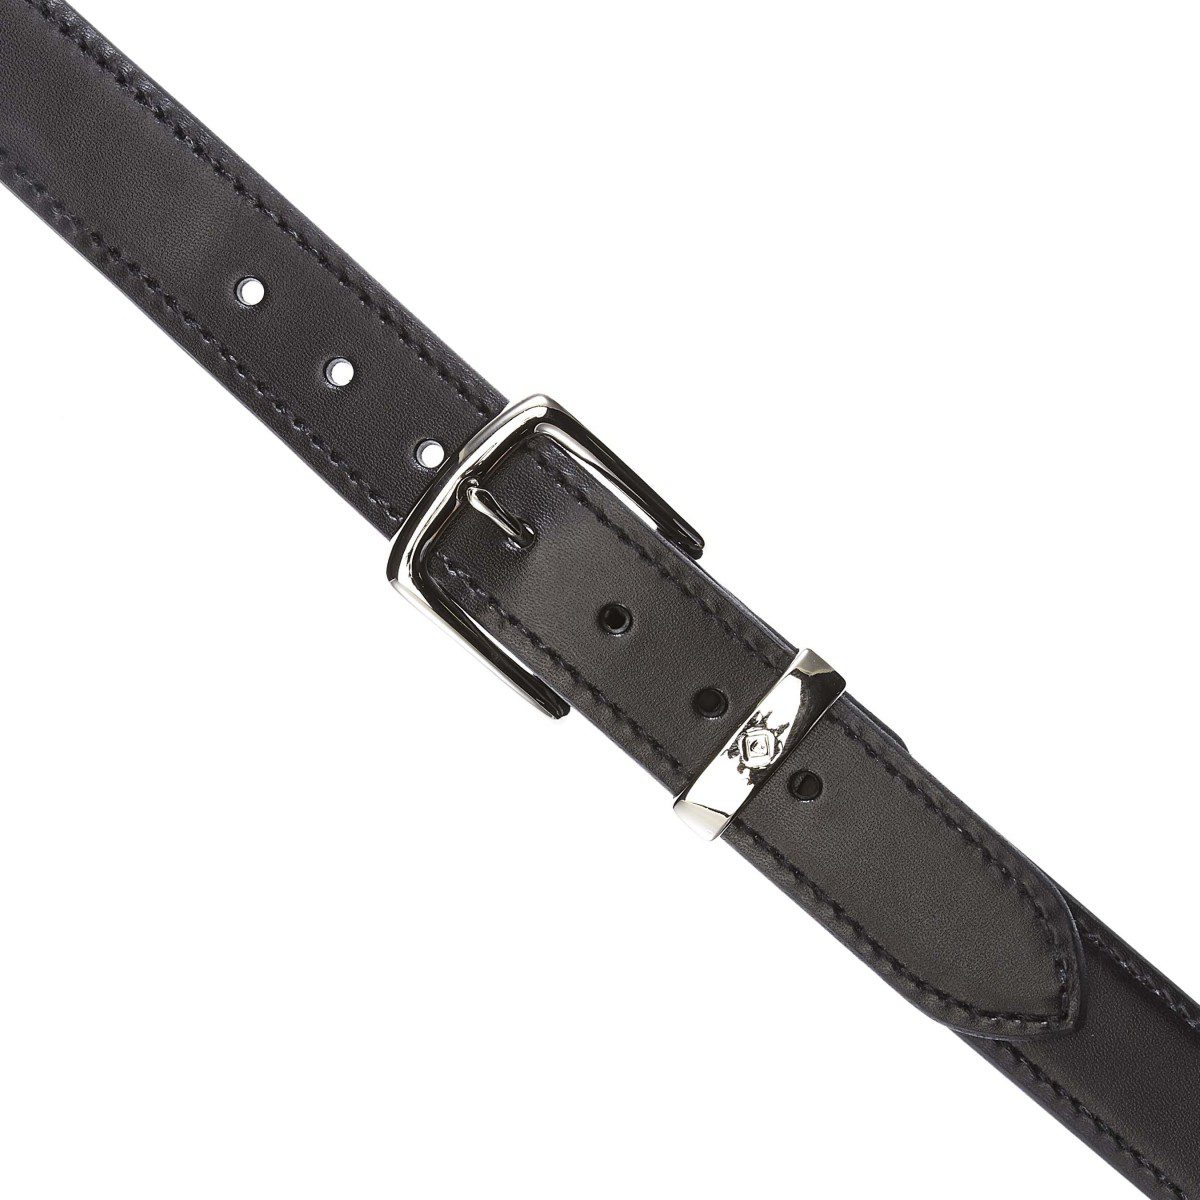 Aker Leather Concealed Carry Gun Belt 1.5